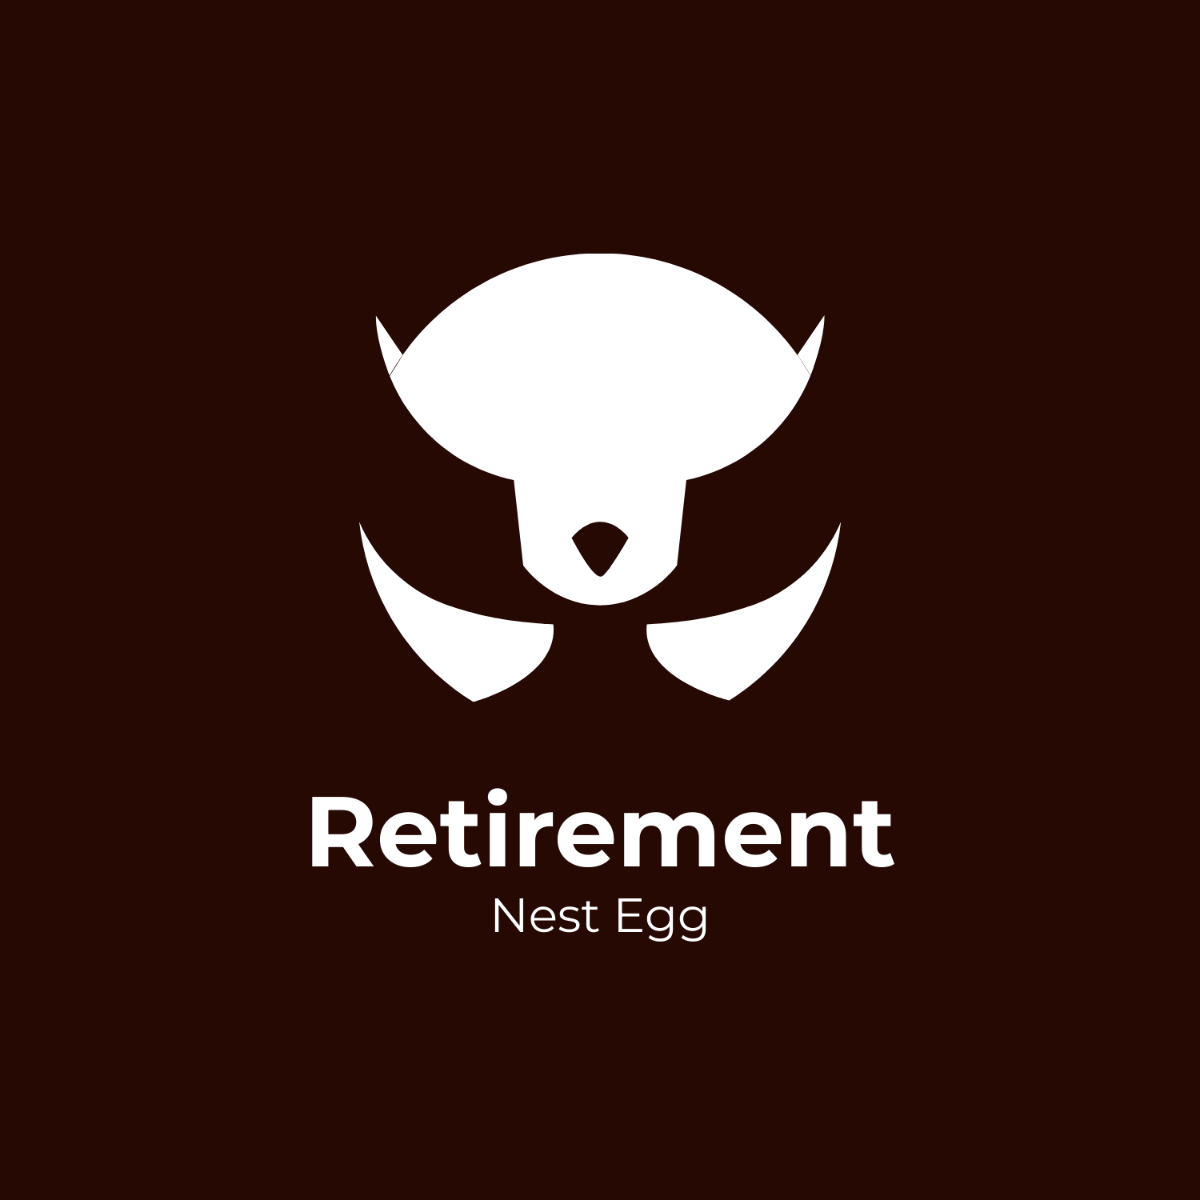 Retirement Nest Egg Logo Template